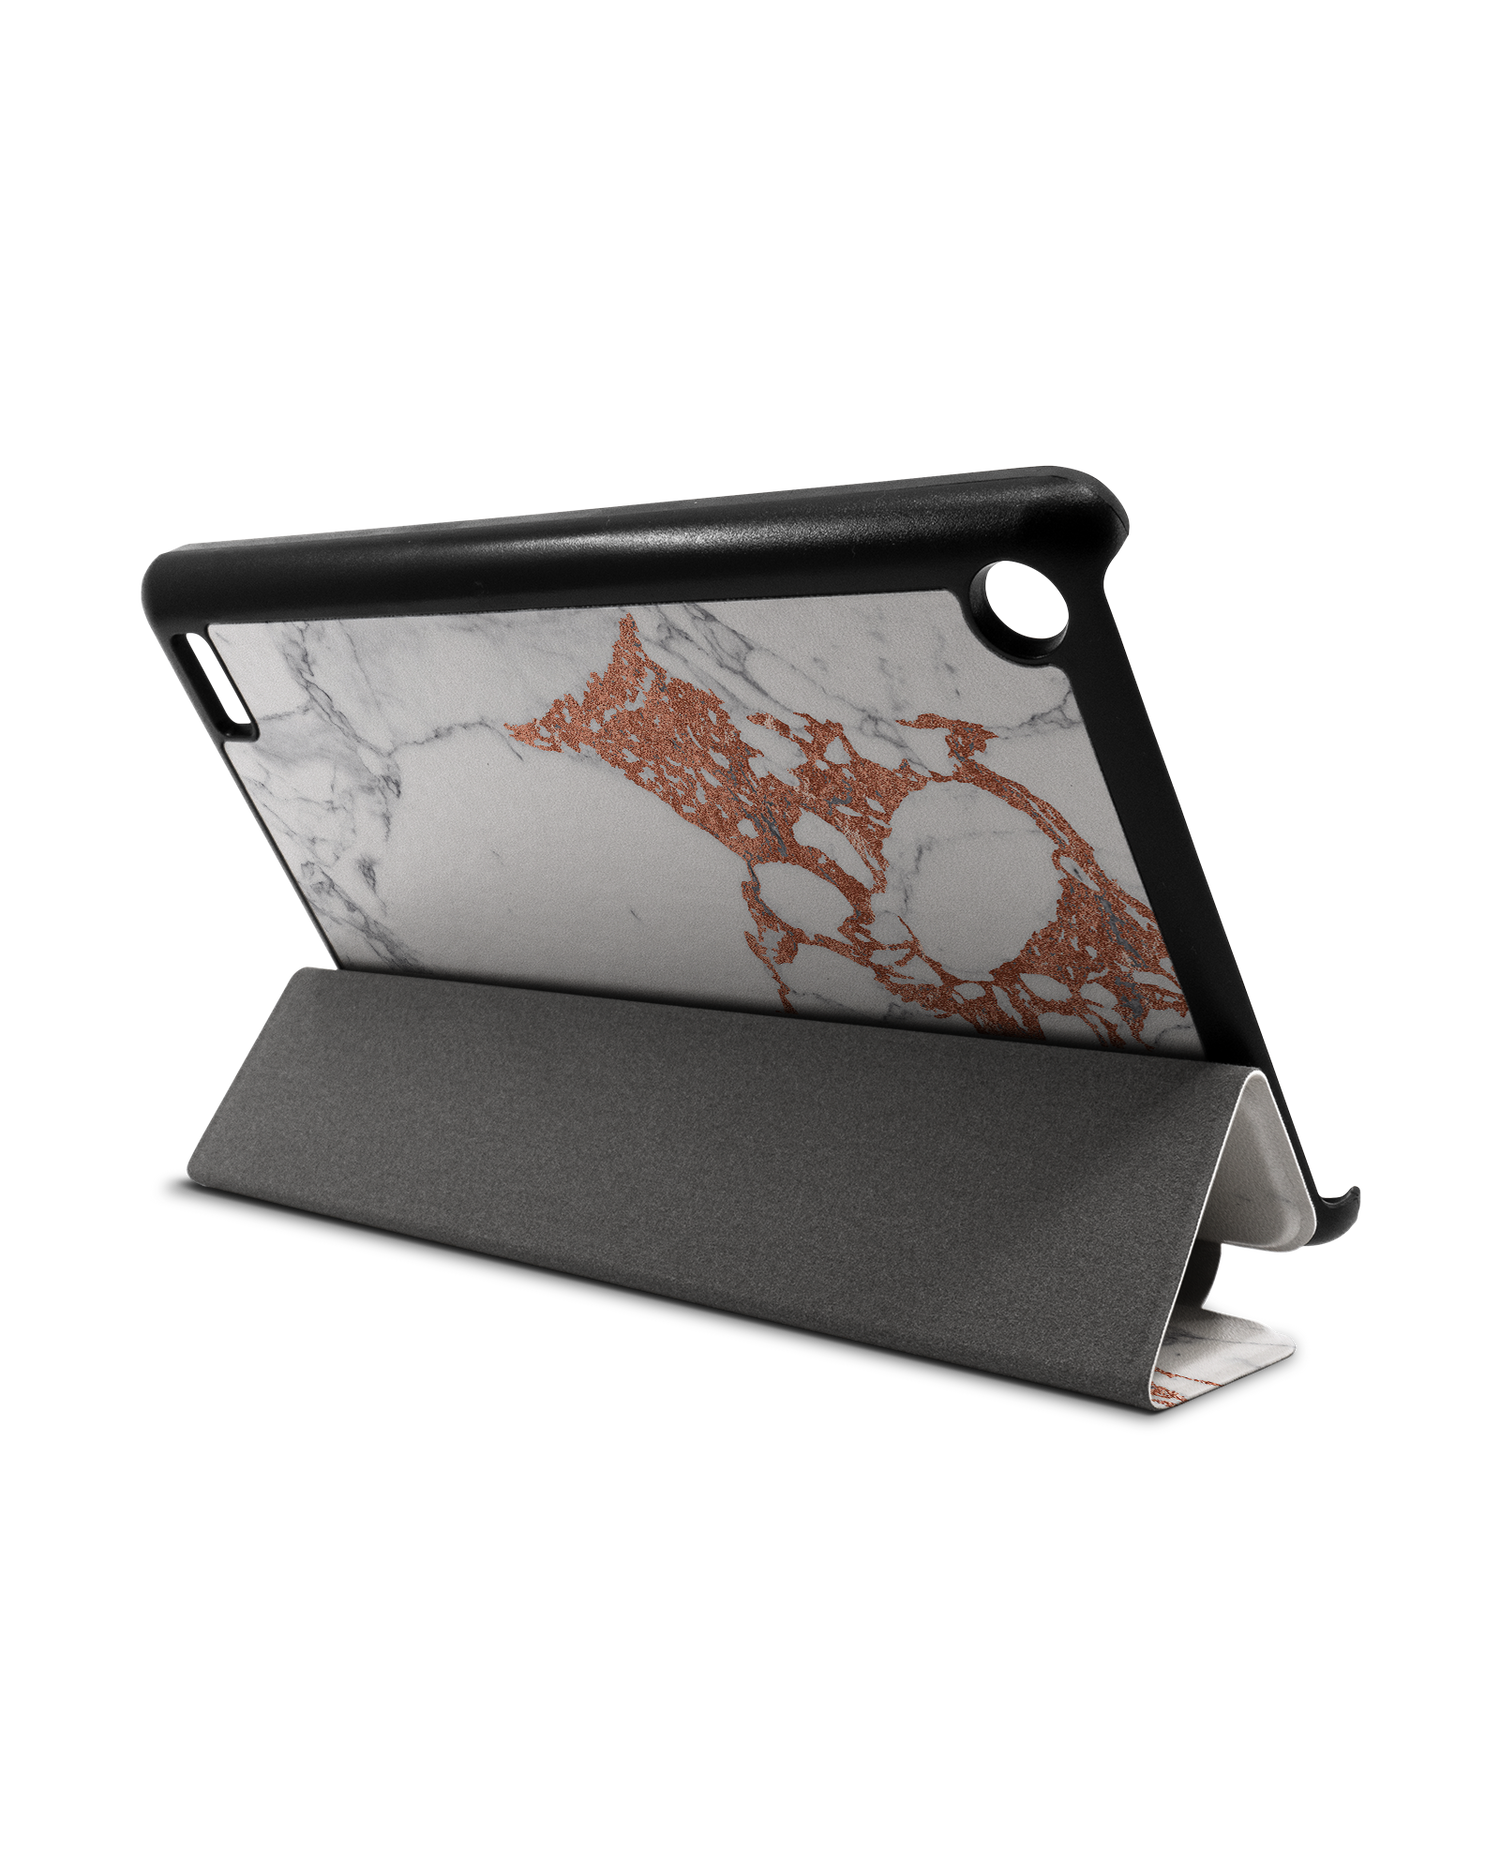 Marble Mix Tablet Smart Case für Amazon Fire 7: Aufgestellt im Querformat